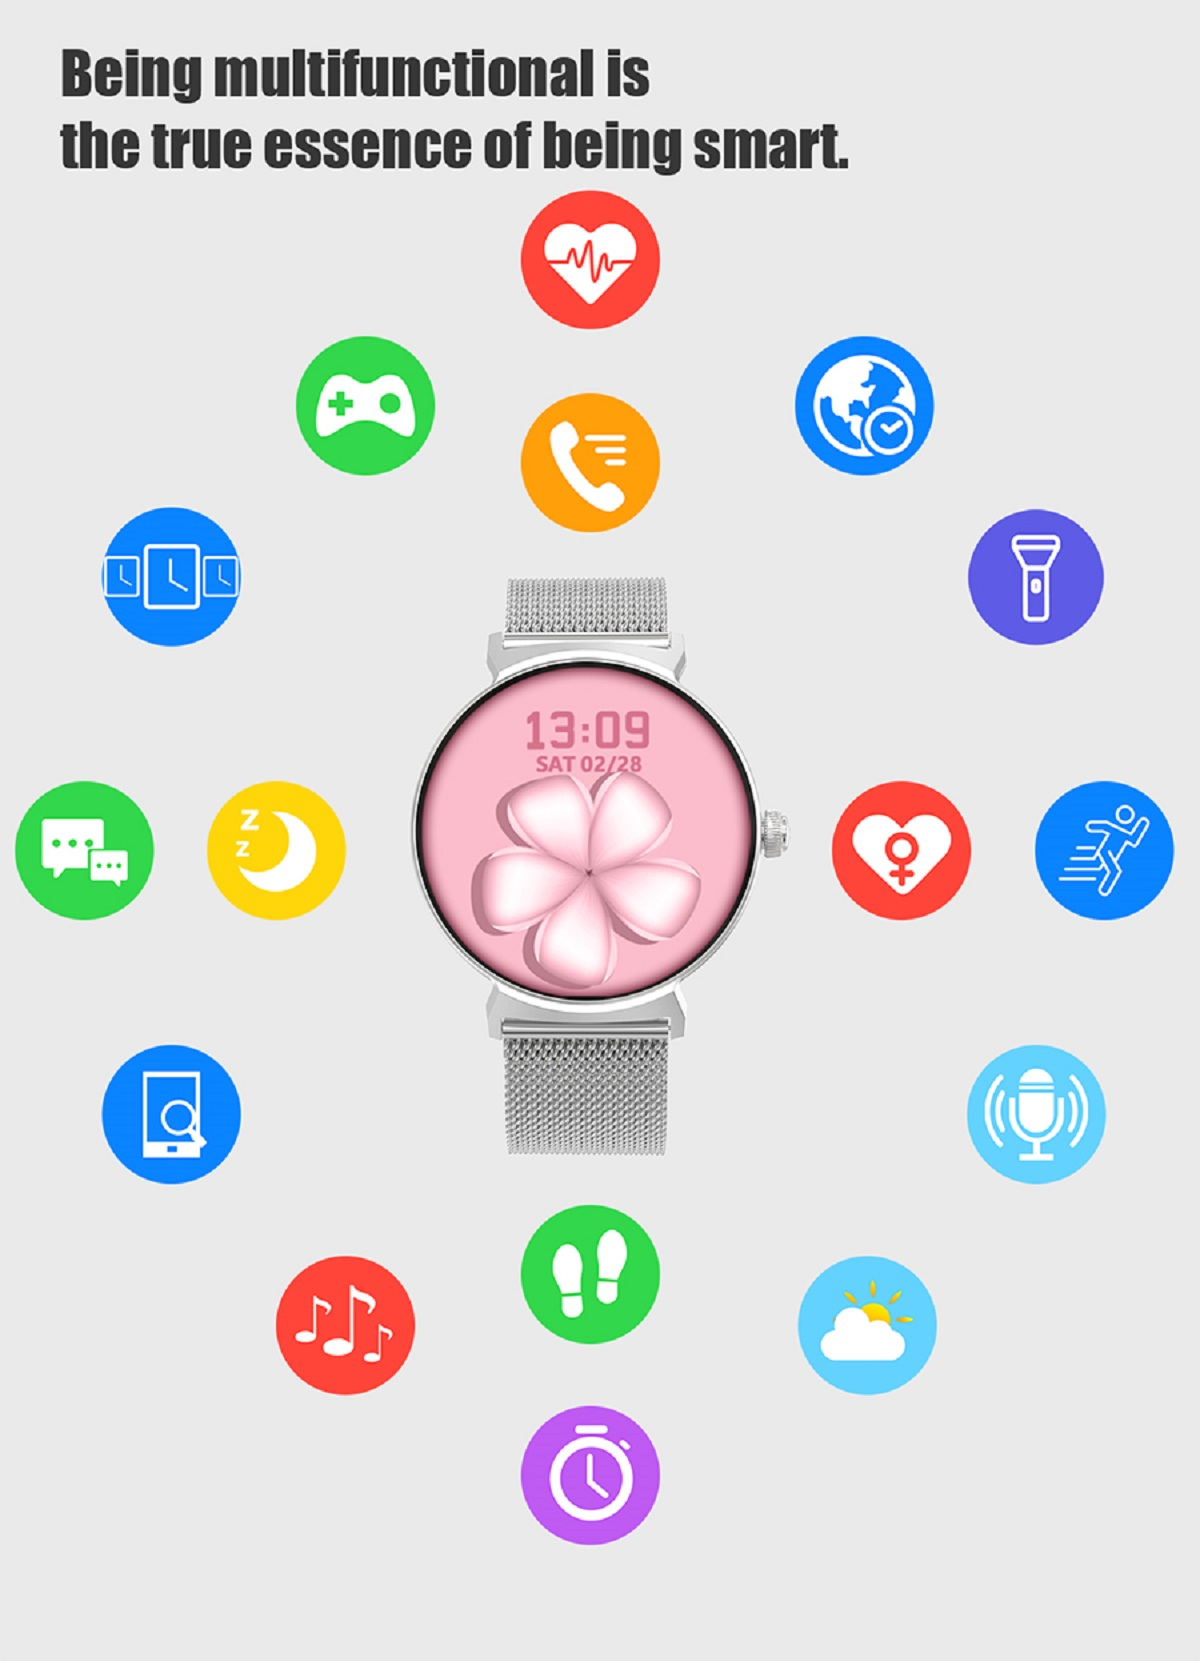 MIRUX DT4New BT-Anruf Rund Pink Aktivitätstracker Silikon, 240mm, Gold Smartwatch